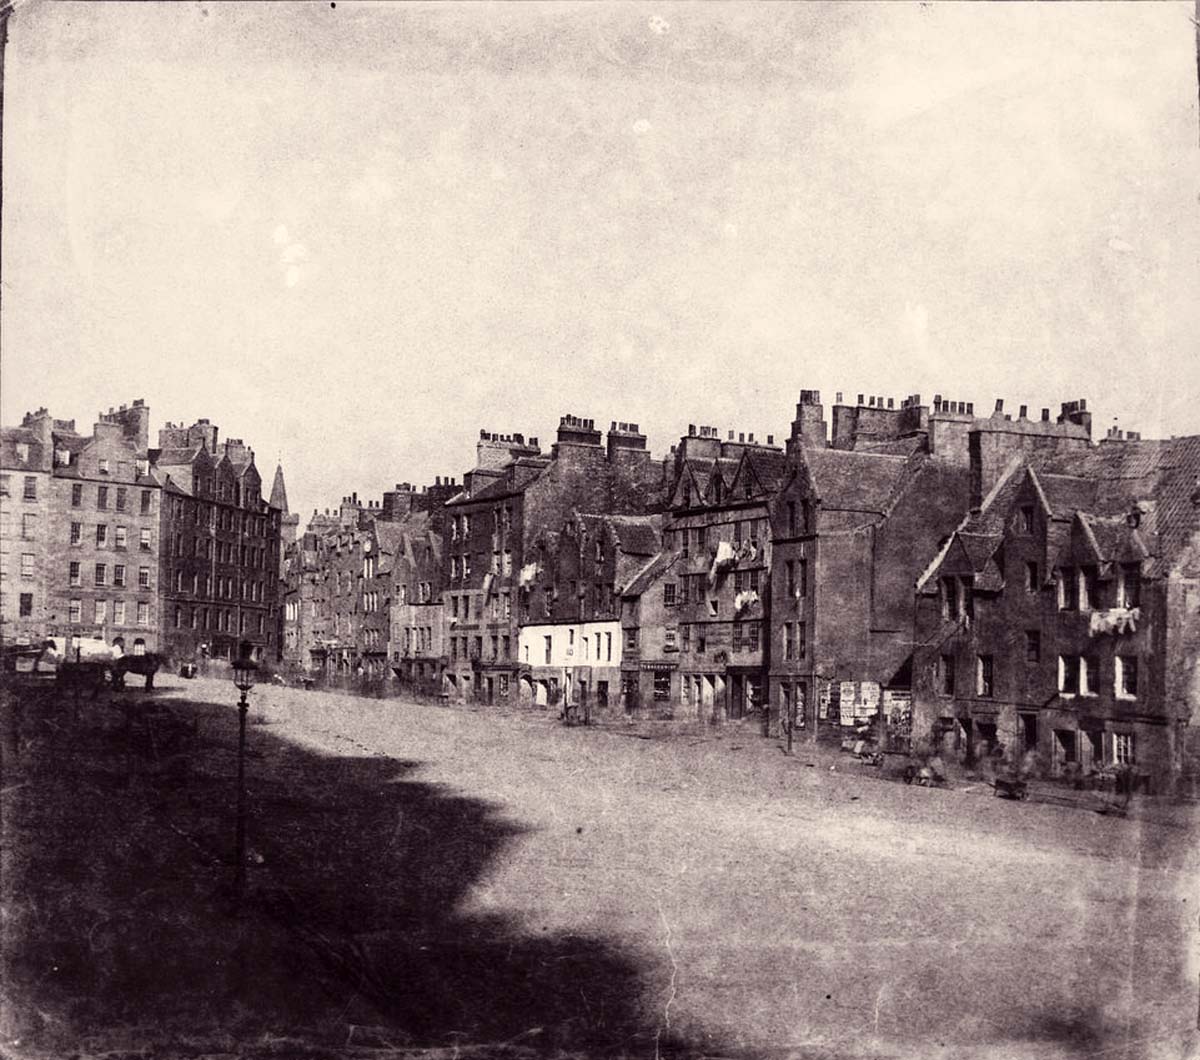 Edinburgh. Grassmarket, 1860